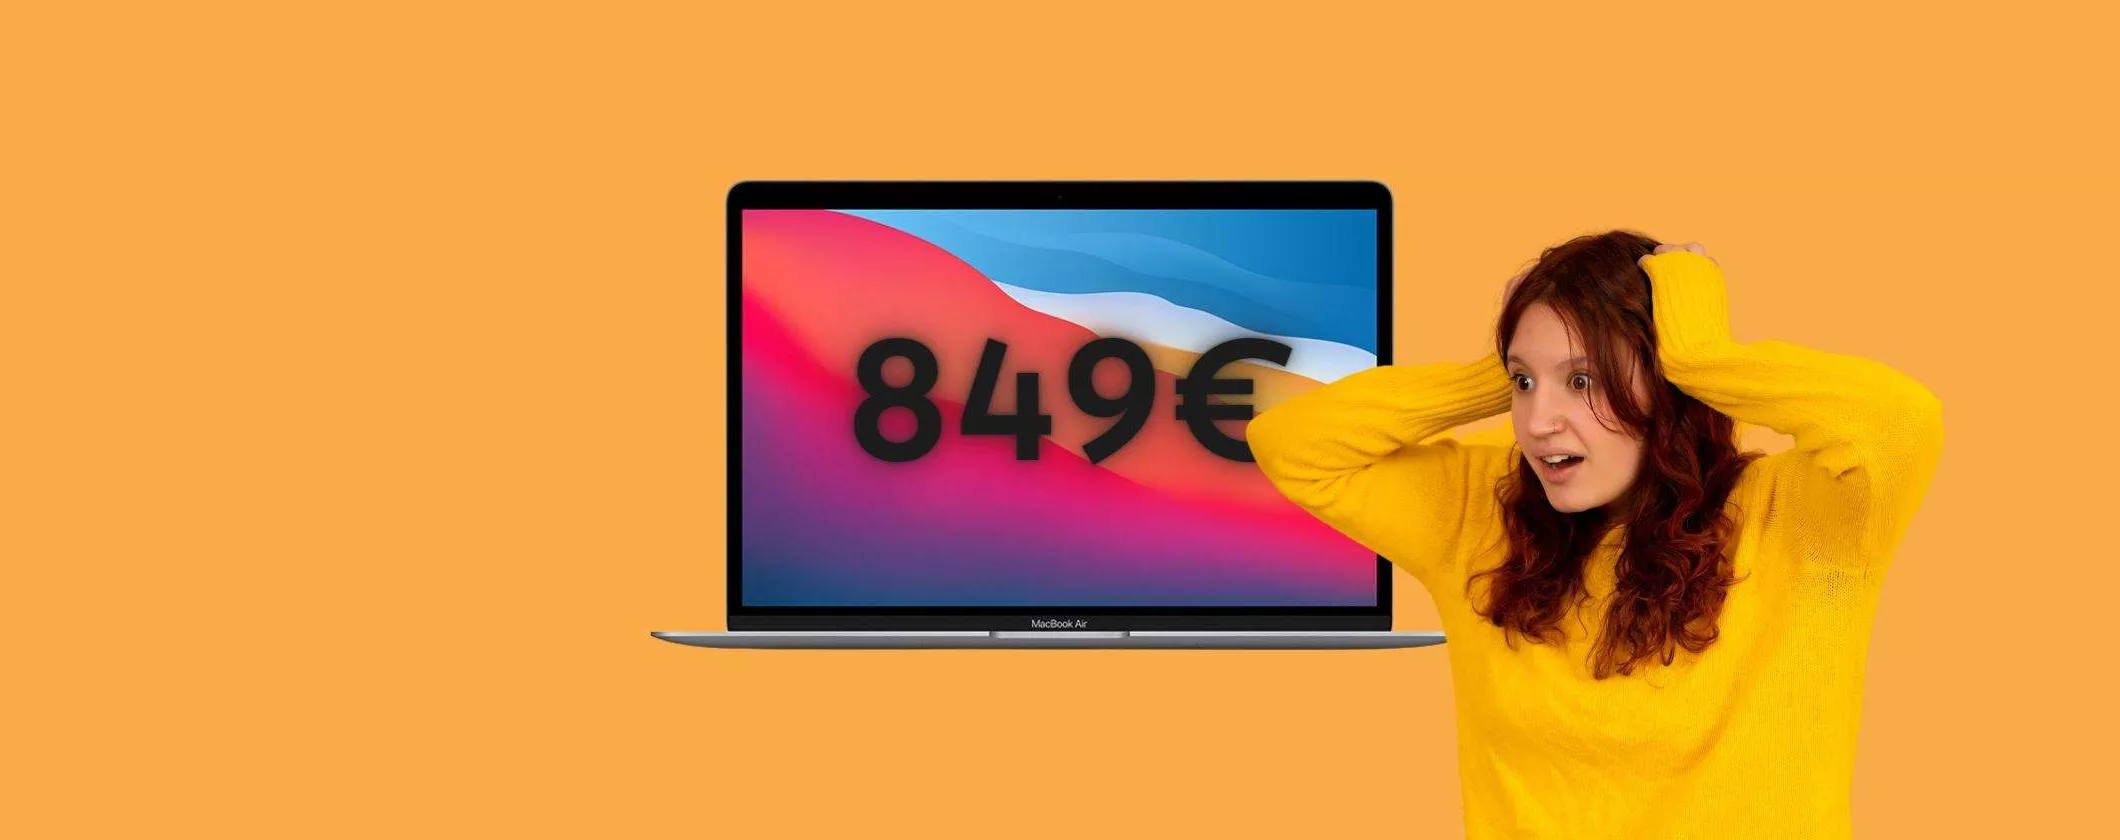 MacBook Air M1 a soli 849€: colpo di coda del Black Friday